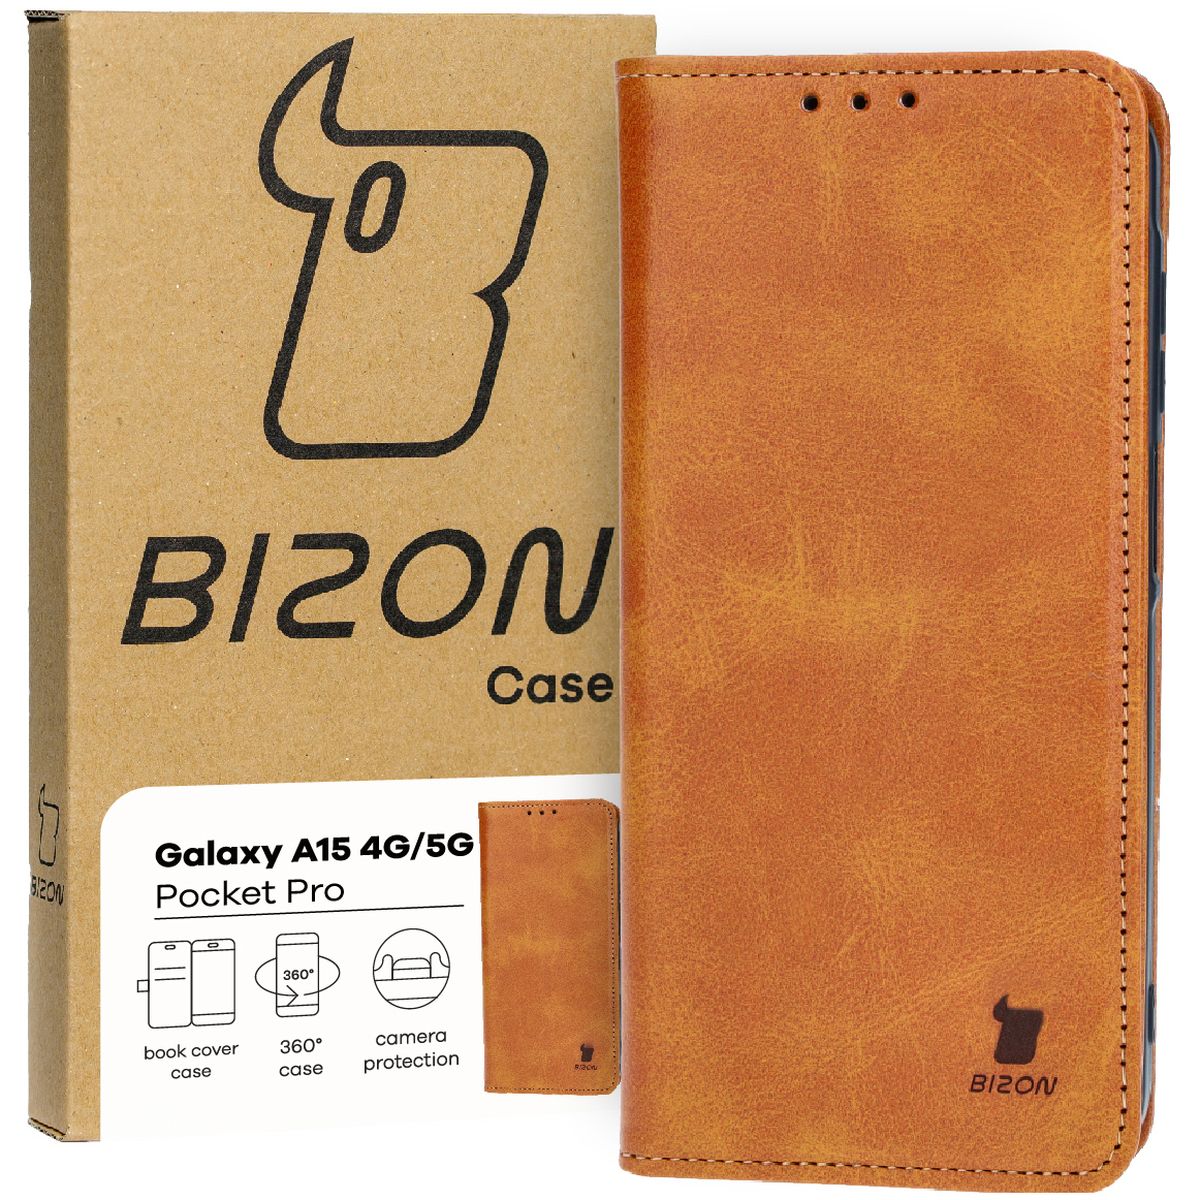 Schutzhülle für Galaxy A15 4G/5G, Bizon Case Pocket Pro, Braun